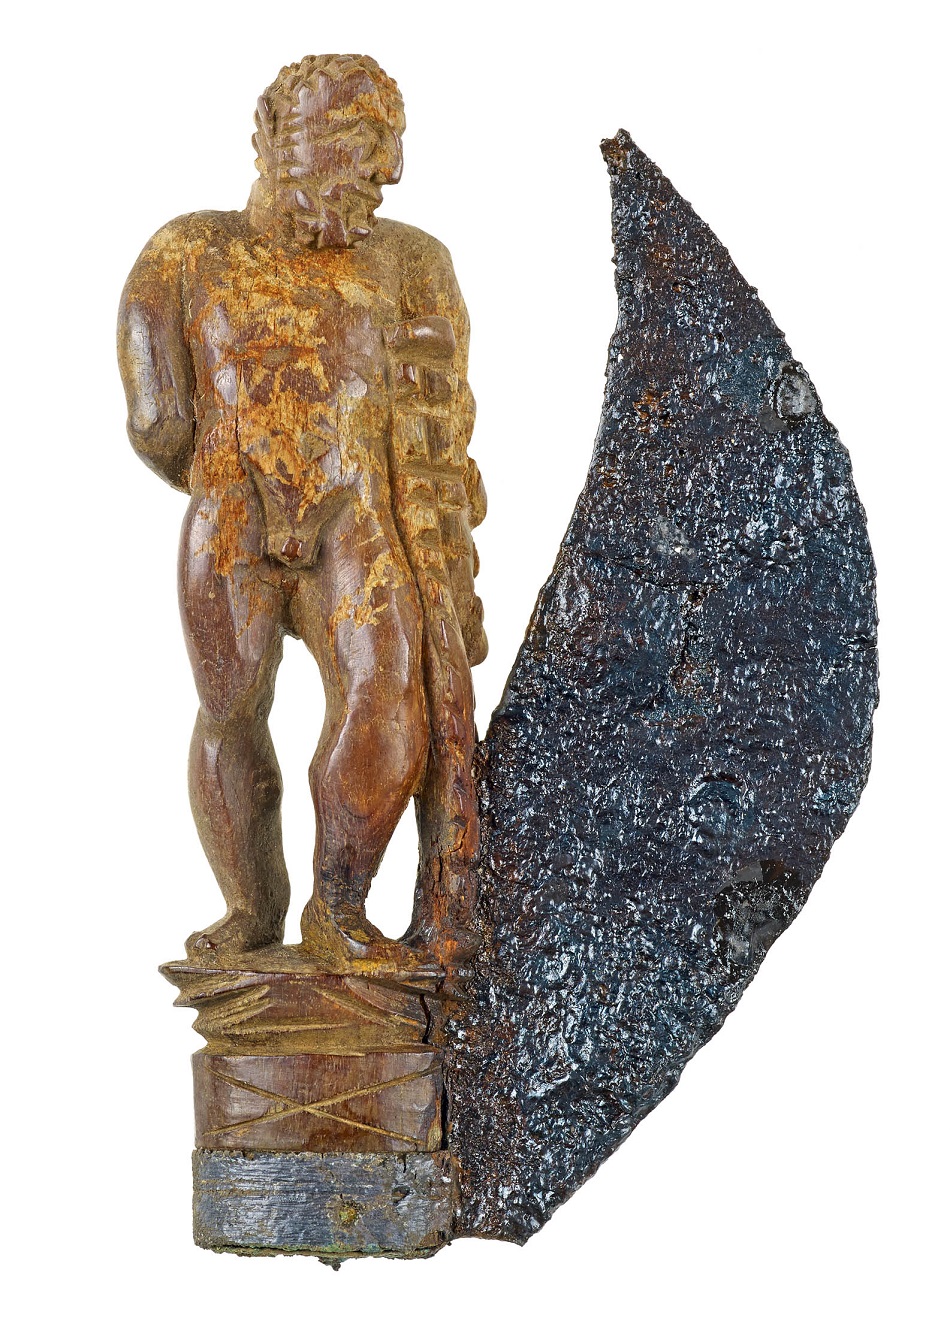 Otvírací nůž s figurkou Herkula jako rukojetí z pohřební výbavy bohaté Římanky, foto J.Vogel, LVR-LandesMuseum Bonn.